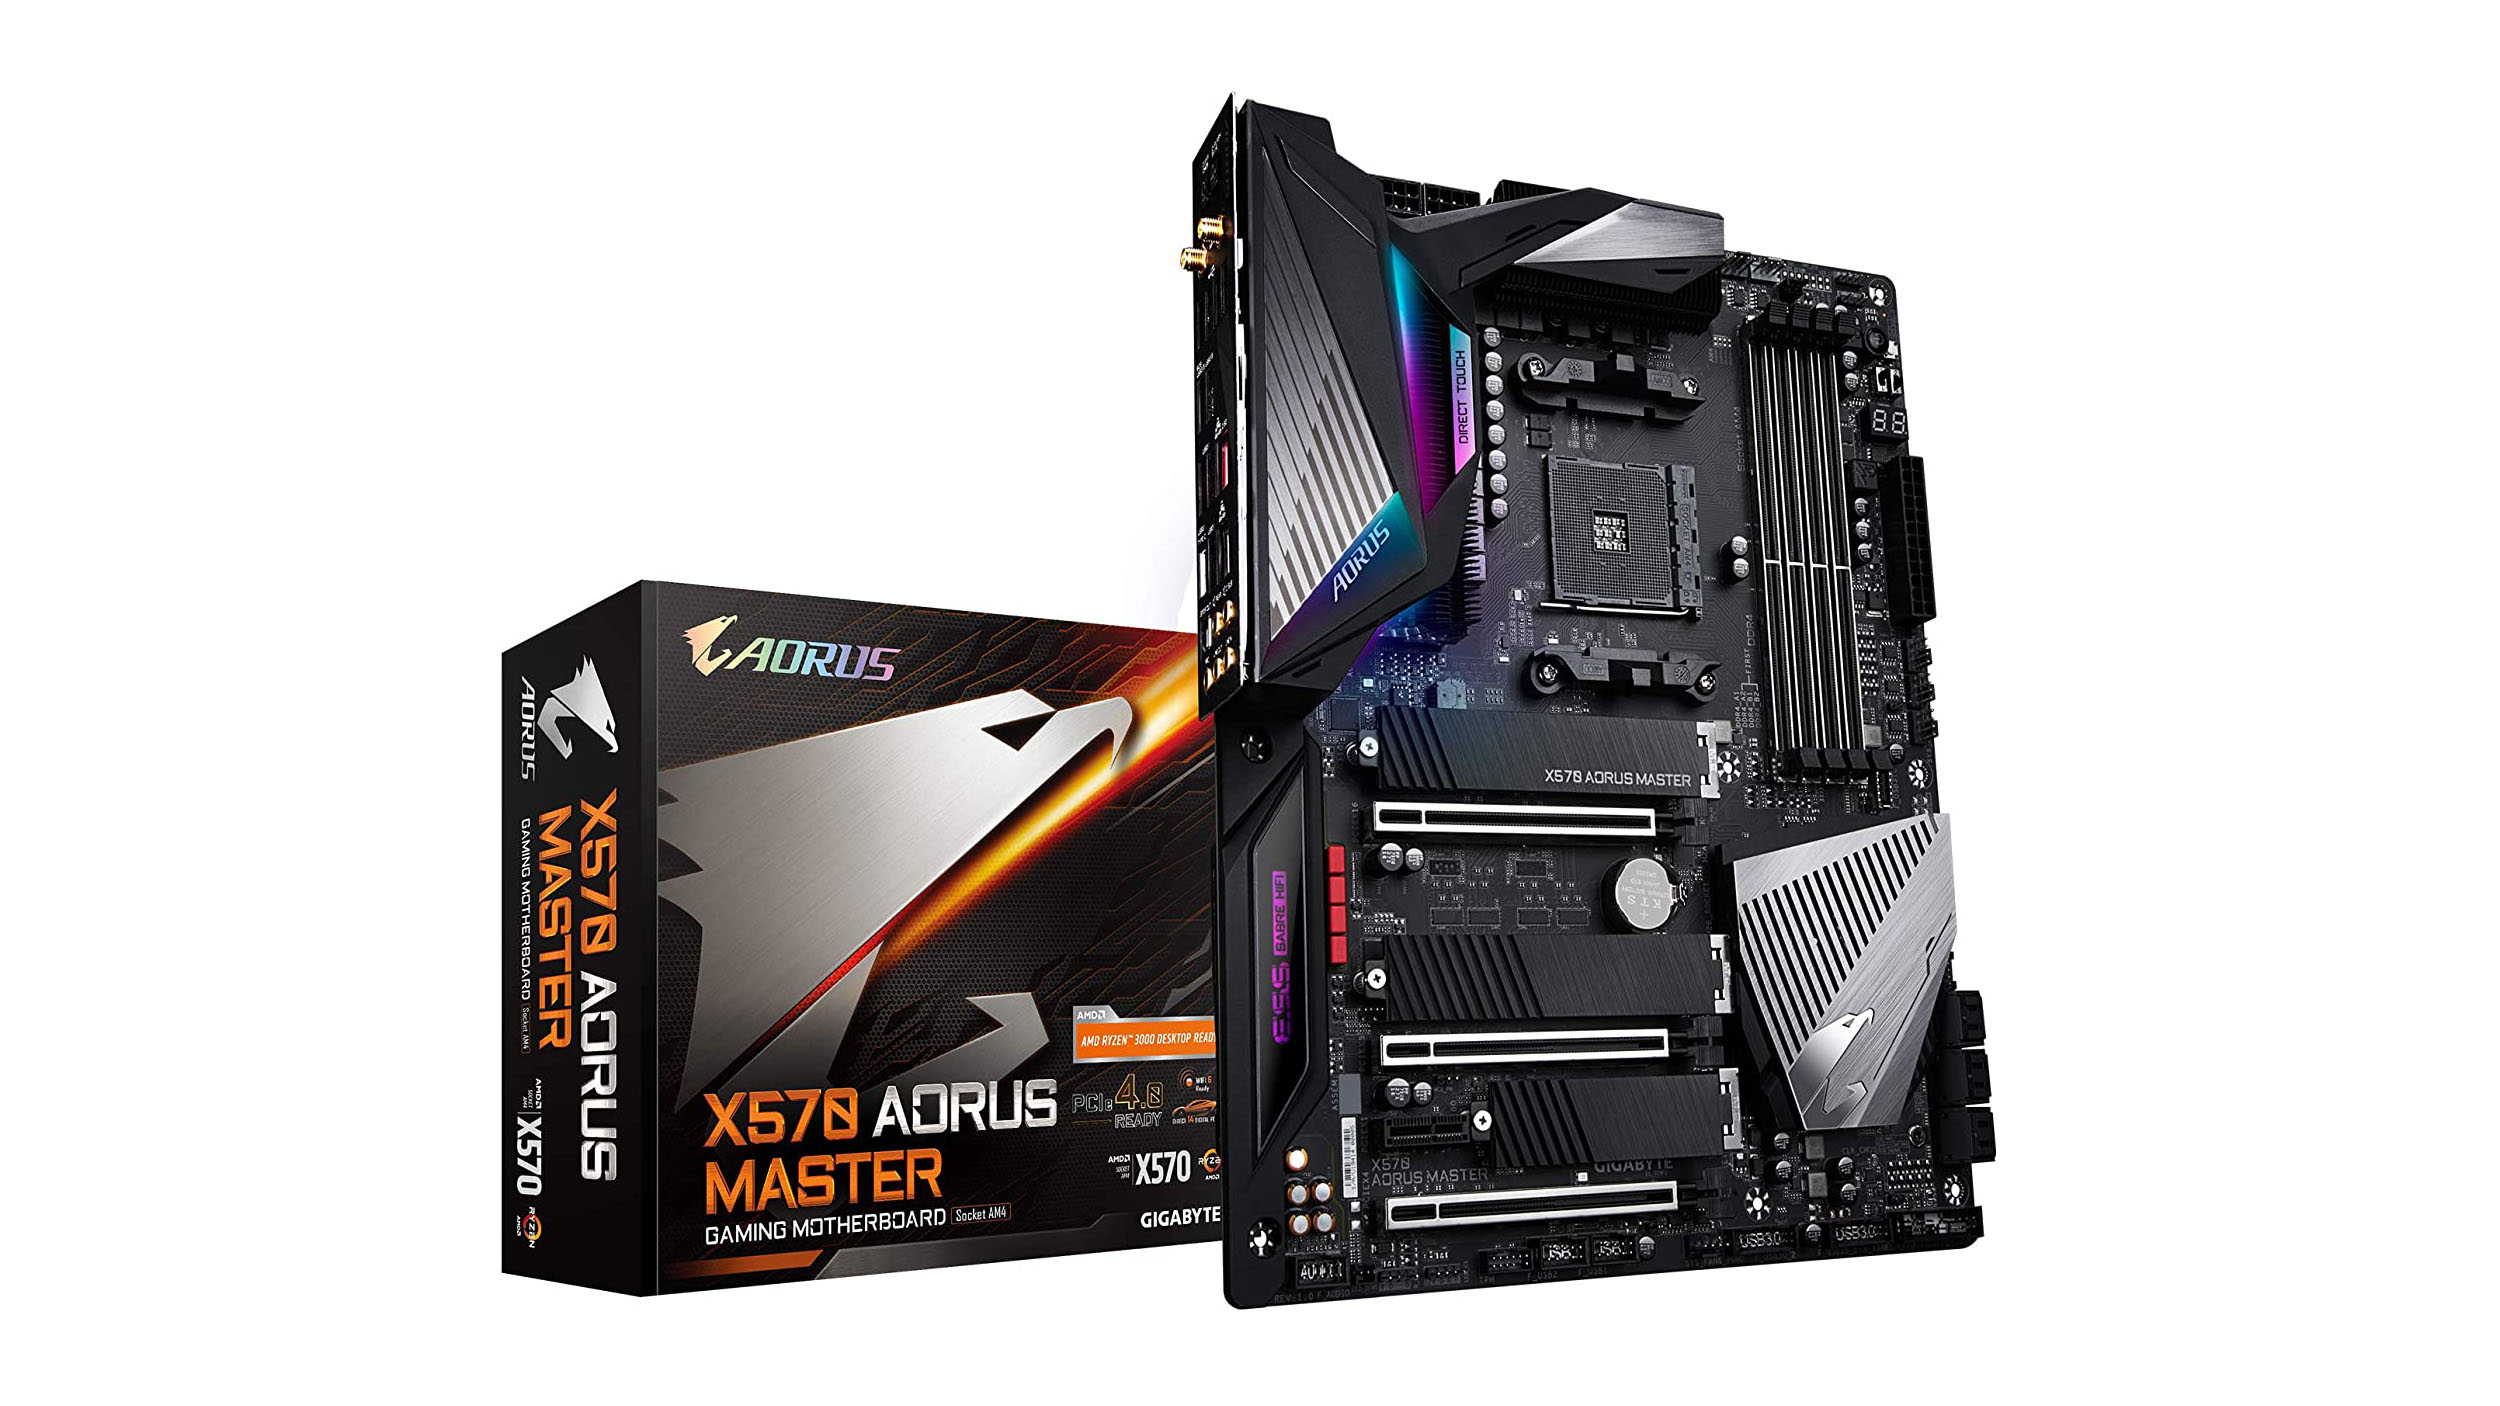 Gigabyte Aorus X570 Master ສາມາດຈັດການກັບໂປເຊດເຊີ AMD ລຸ້ນທີ 3 ຫລ້າສຸດແລະ GPU ຫຼາຍ.